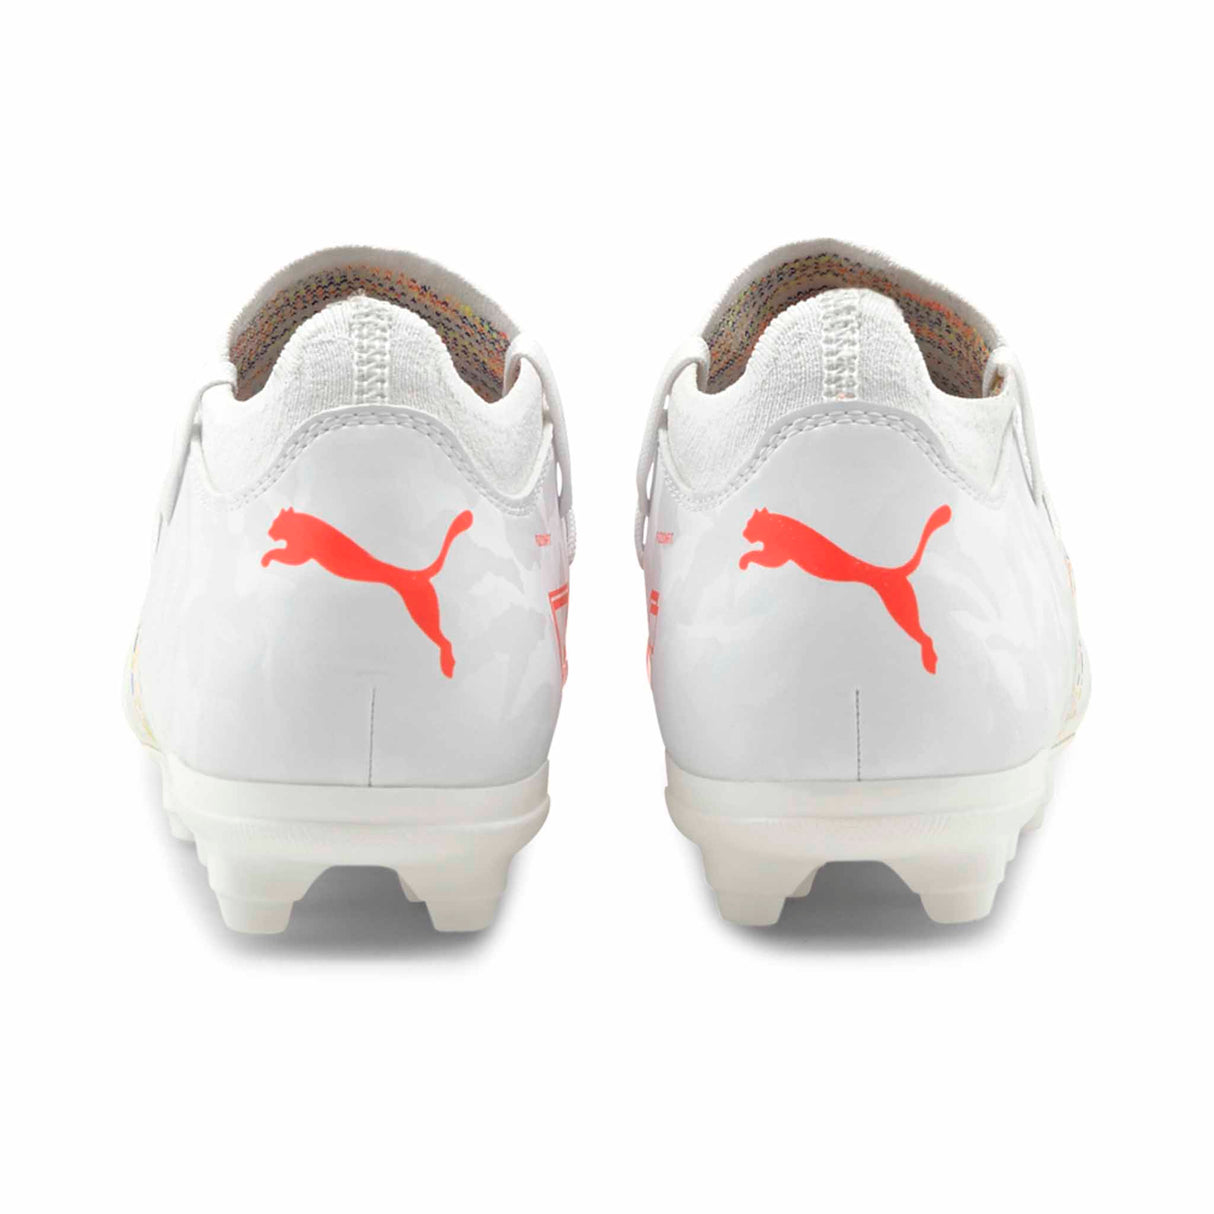 Puma Future Z 3.1 FG Chaussures de soccer a crampons junior Puma White/Red Blast vue de dos